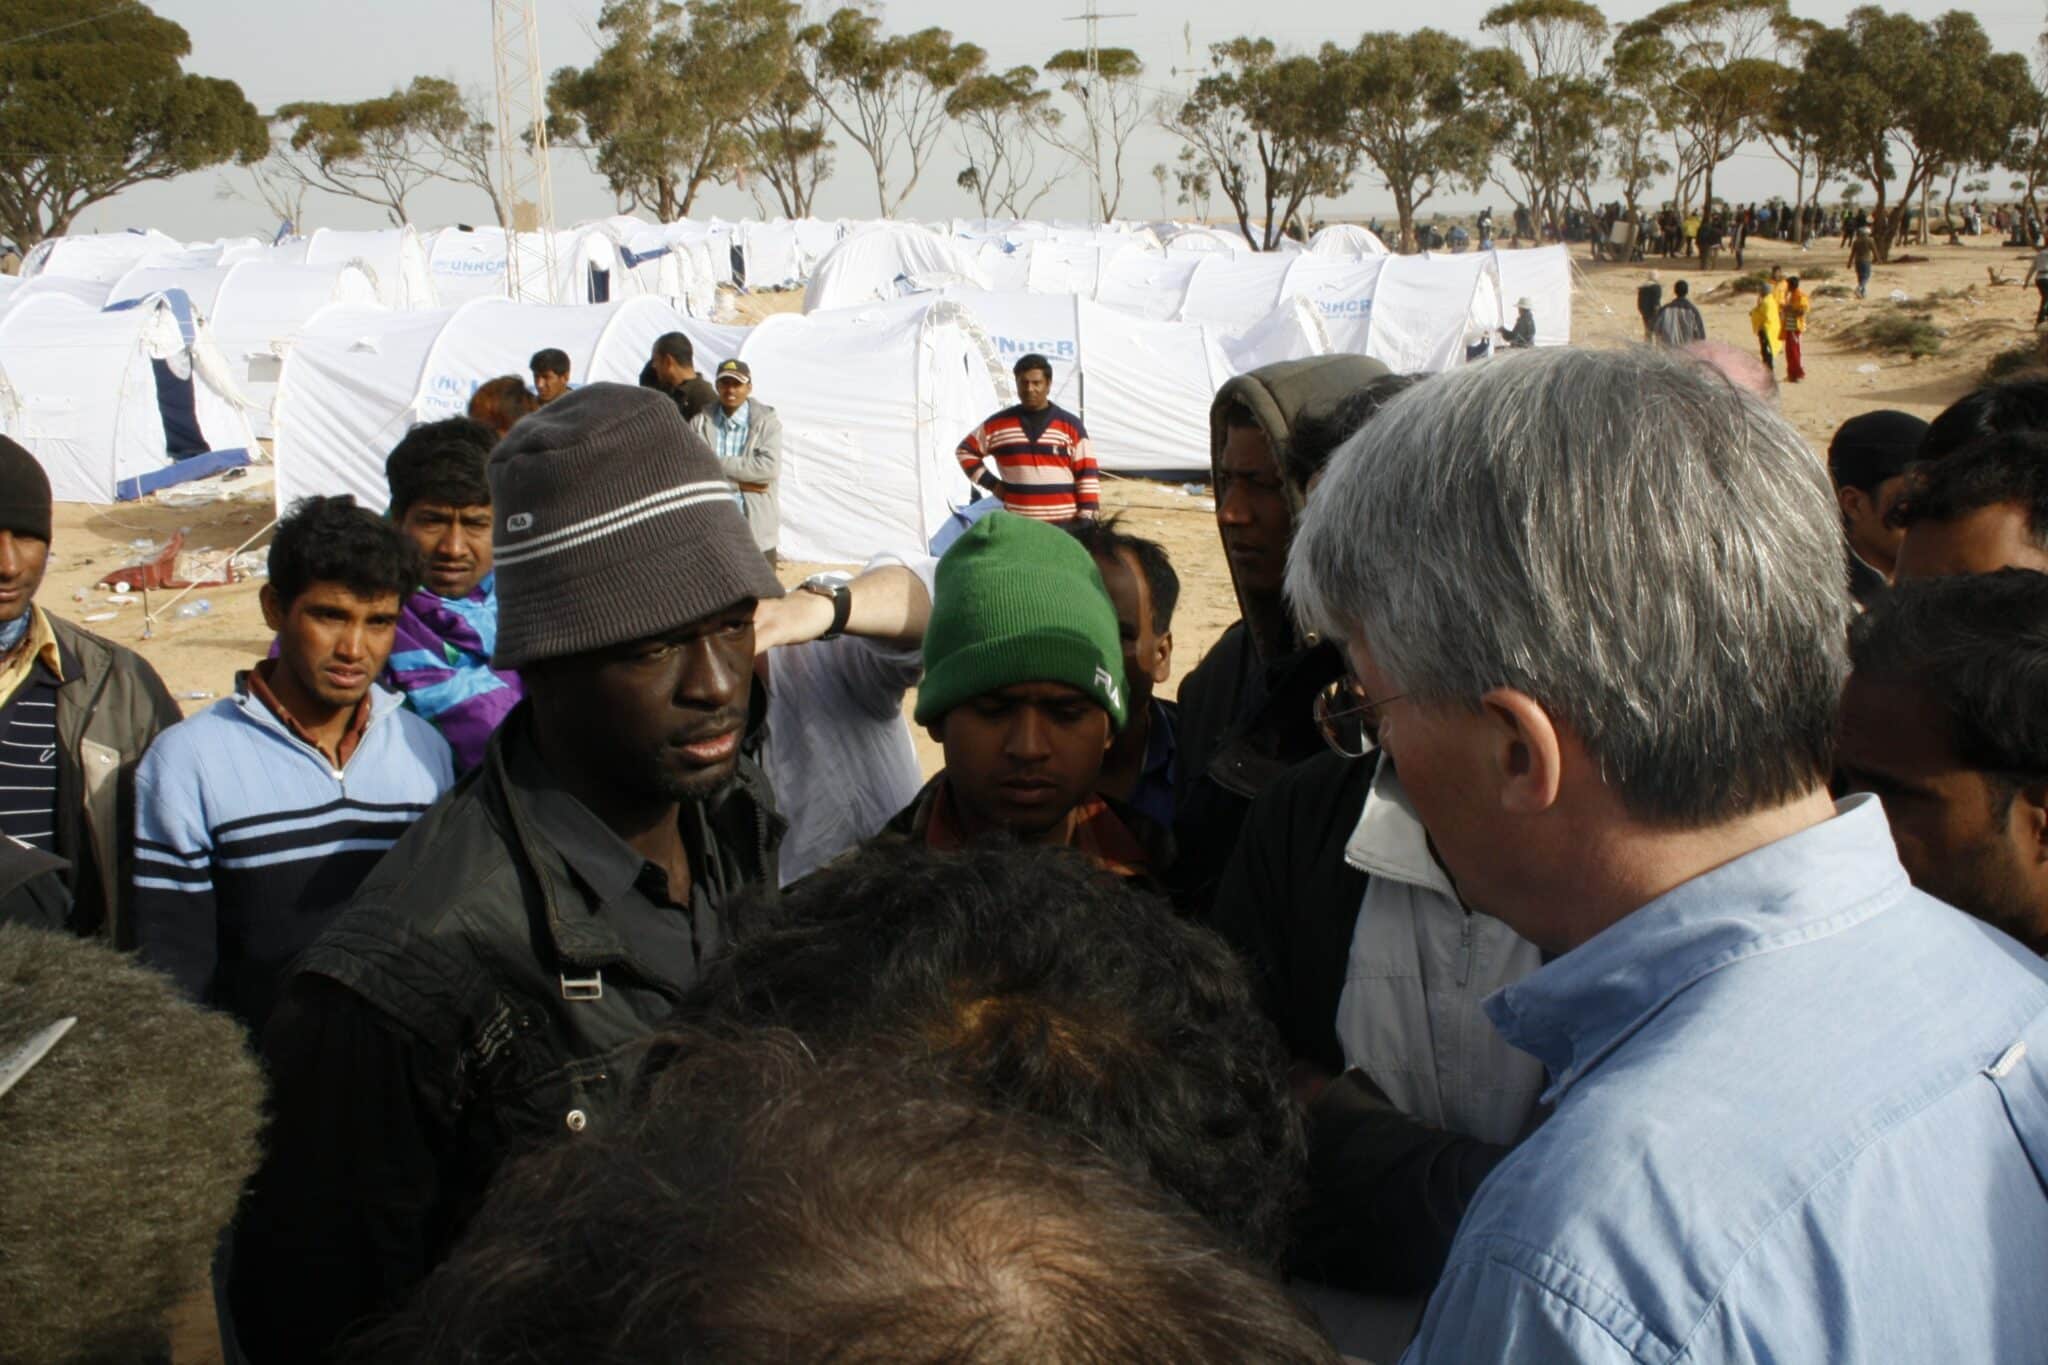 Migranti che hanno attraversato la Libia per arrivare in Tunisia. Immagine ripresa da Flickr/ DFID - UK Department for International DevelopmentDFID - UK Department for International Development DFID - UK Department for International Development in licenza CC